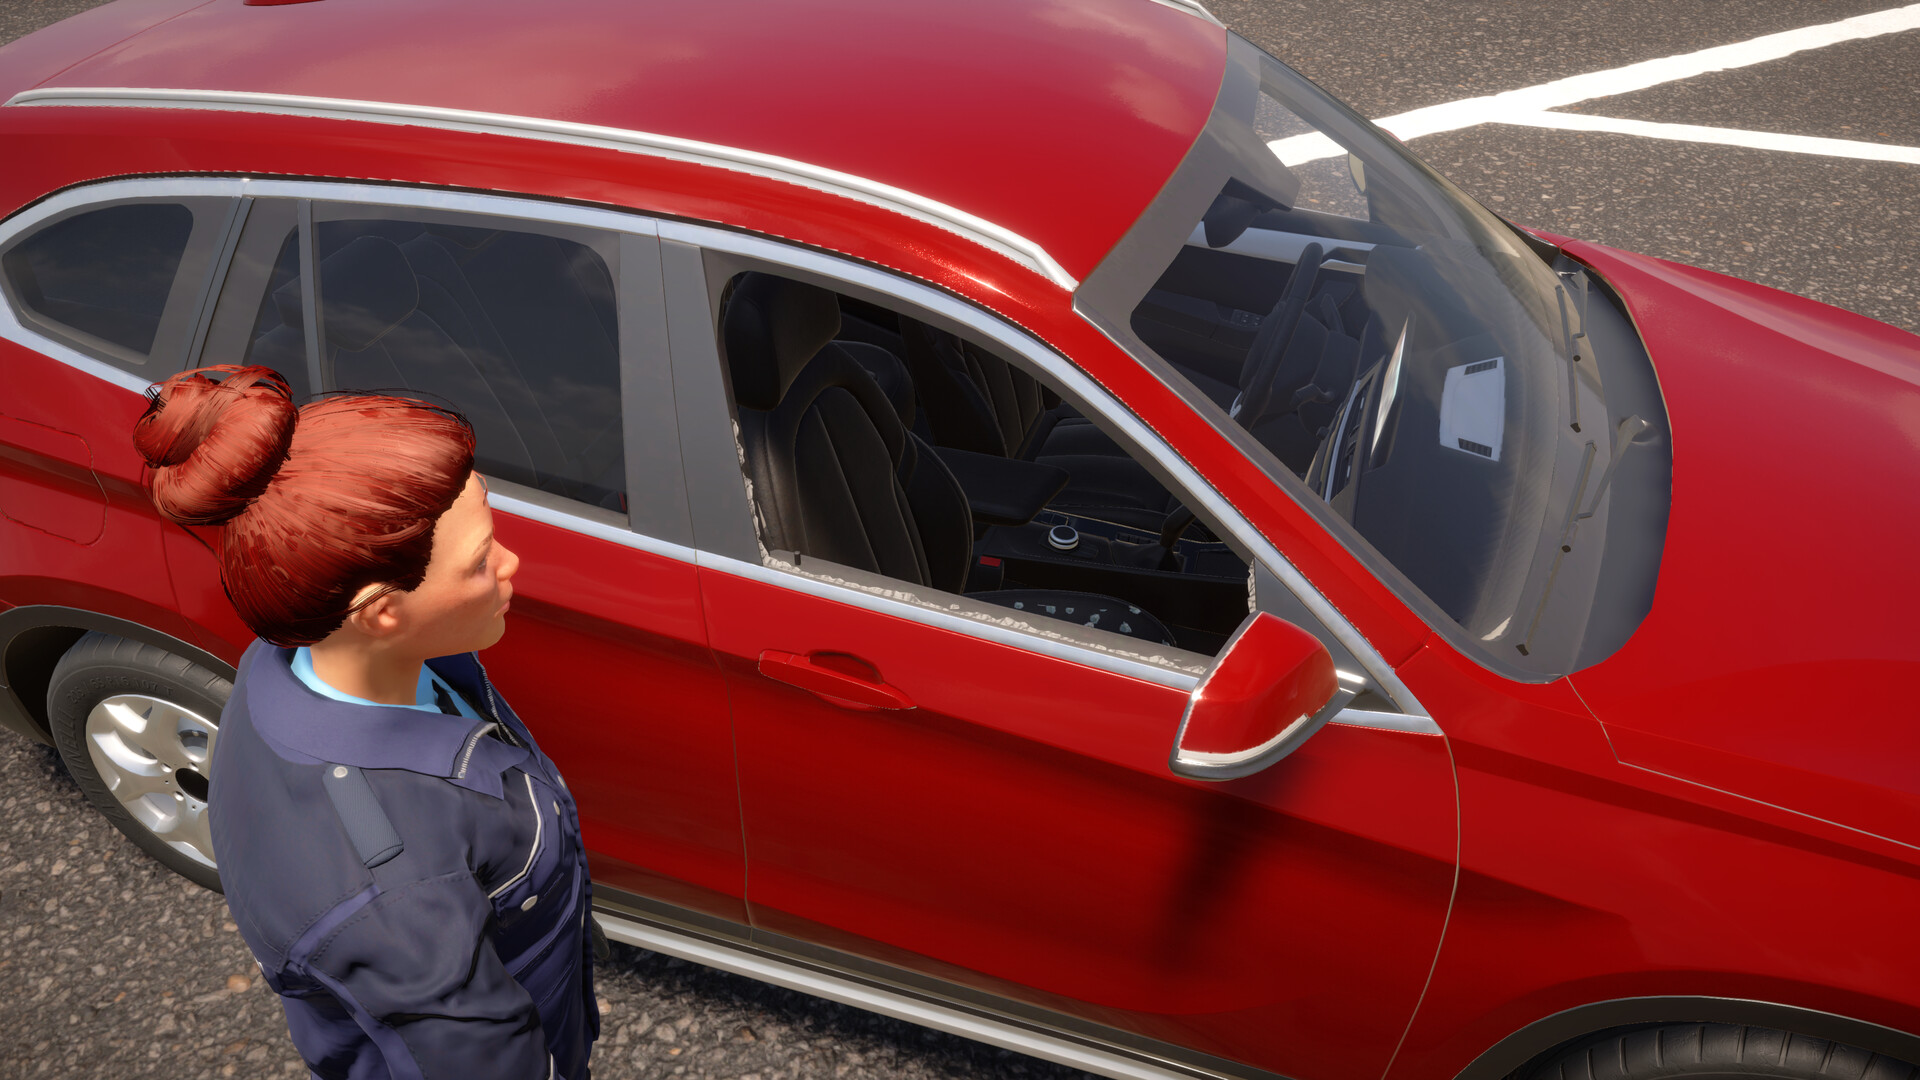 Autobahnpolizei Simulator 3: Off-Road DLC